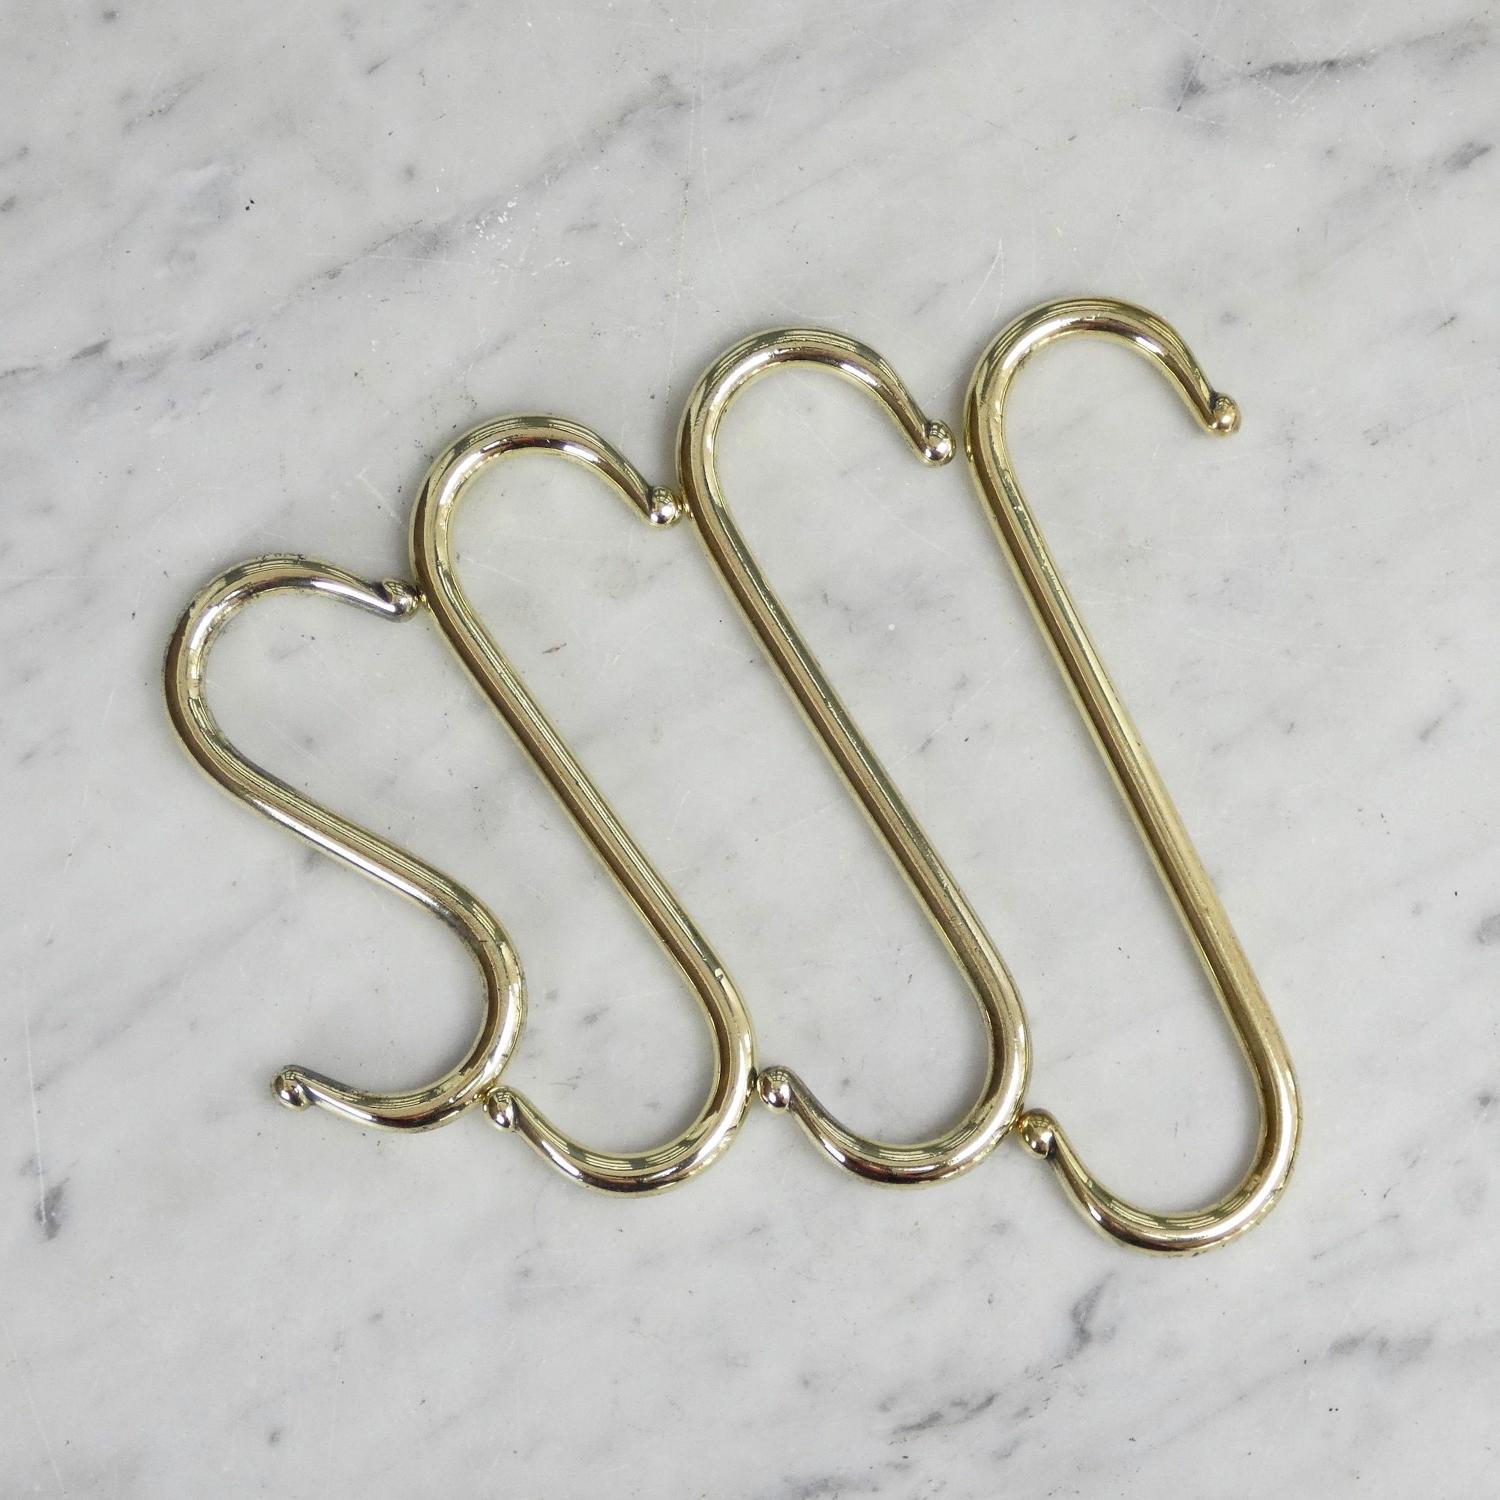 Set of 4 brass hooks